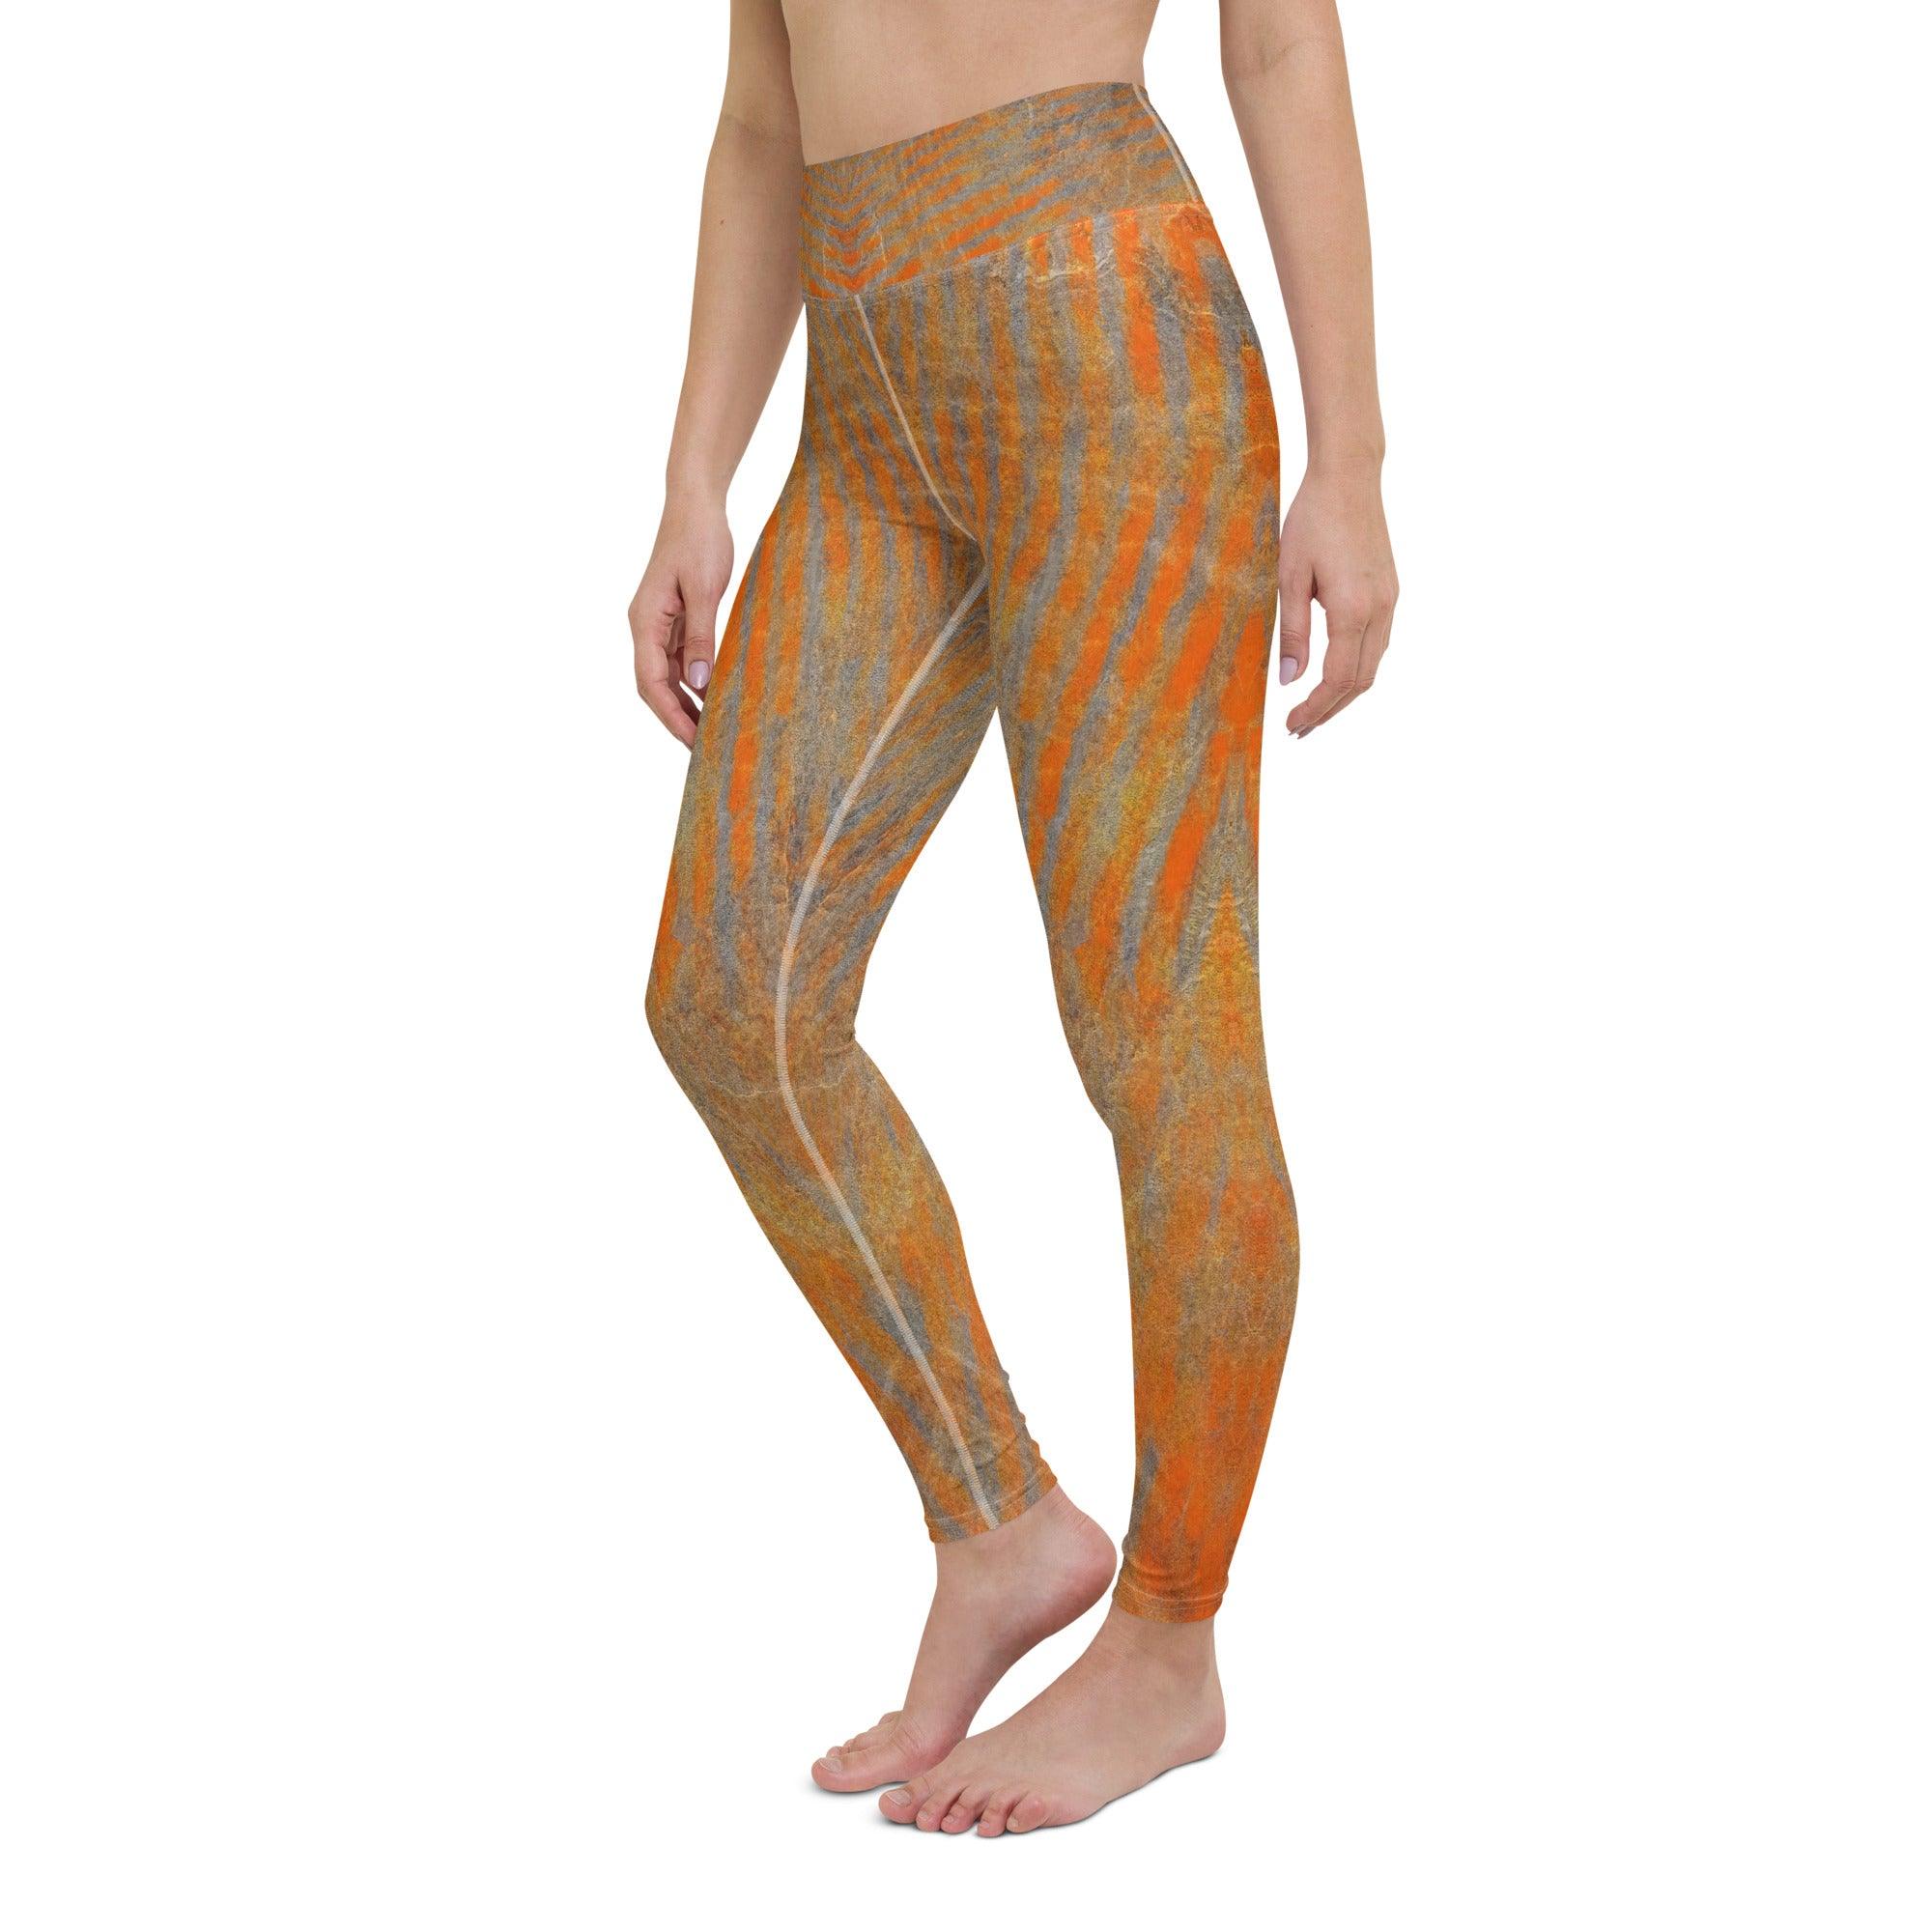 Orange Yoga Leggings - Beyond T-shirts